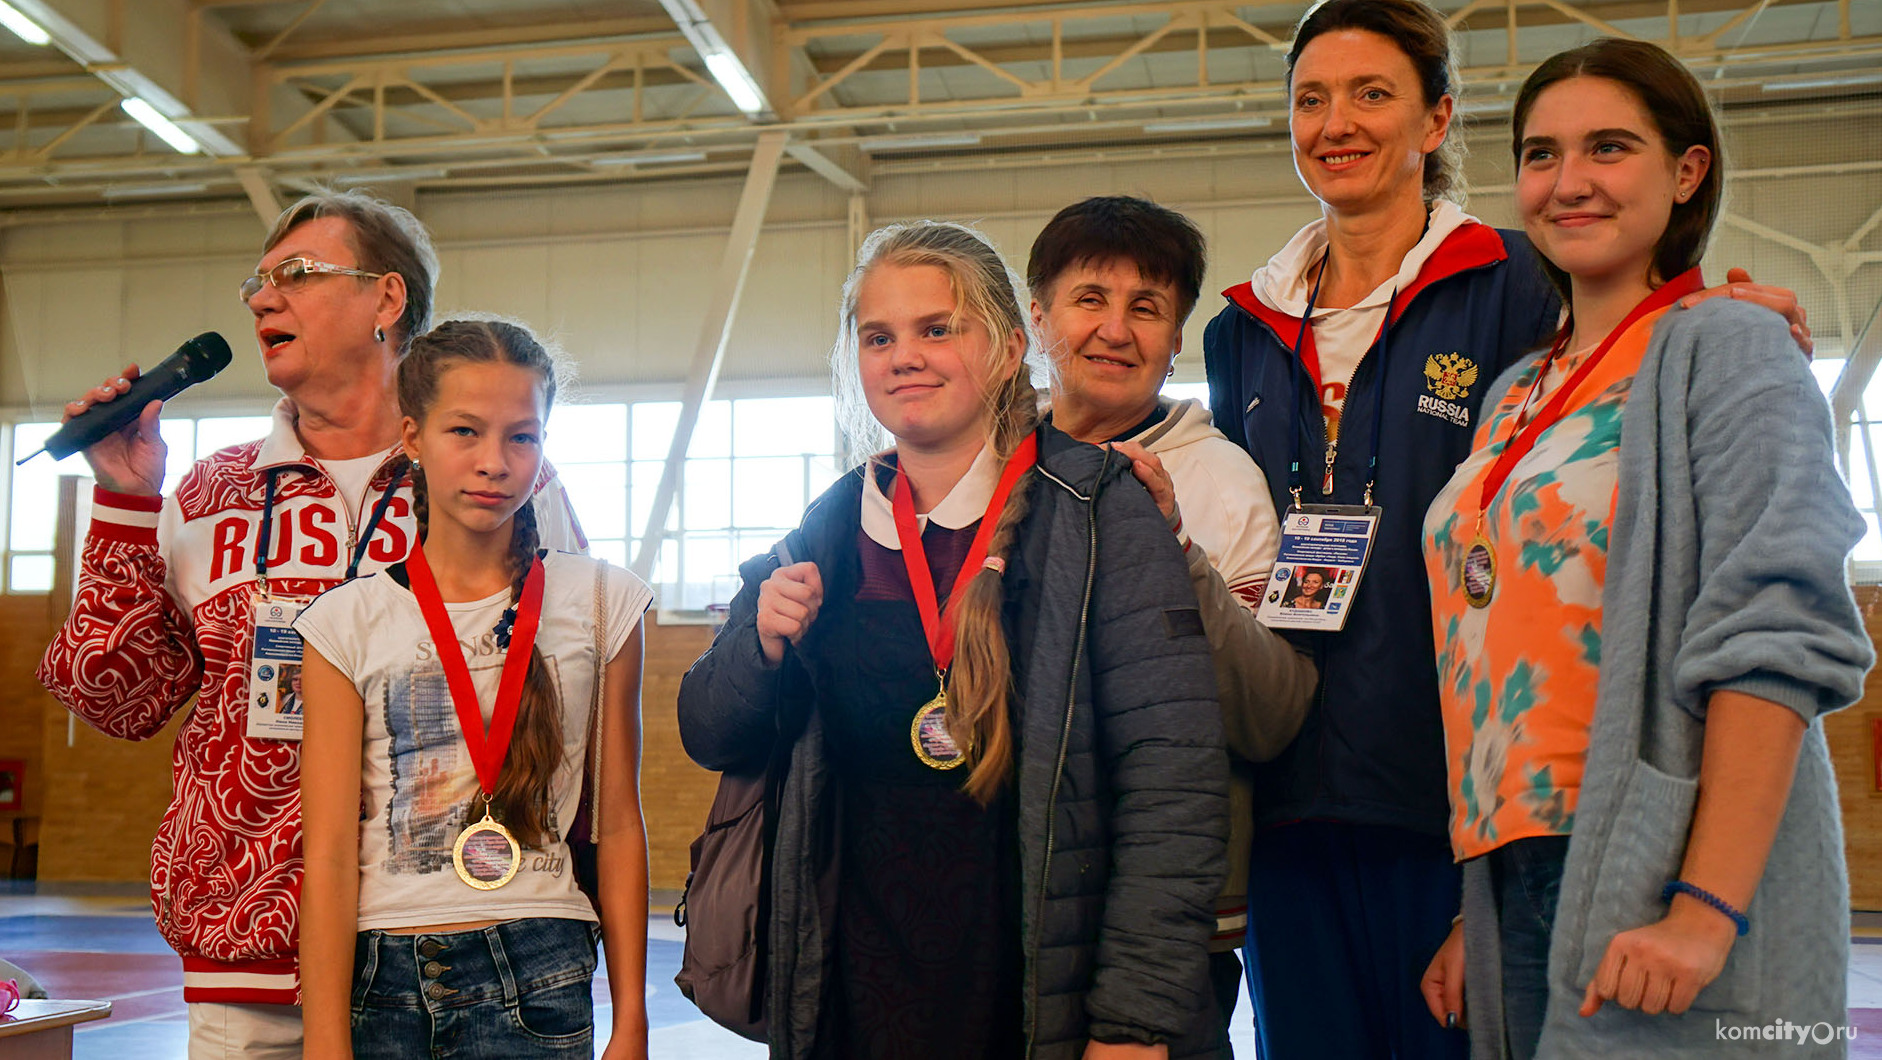 Памятные медали и автографы чемпионов получили школьники Комсомольска-на-Амуре на встрече с Олимпийцами 